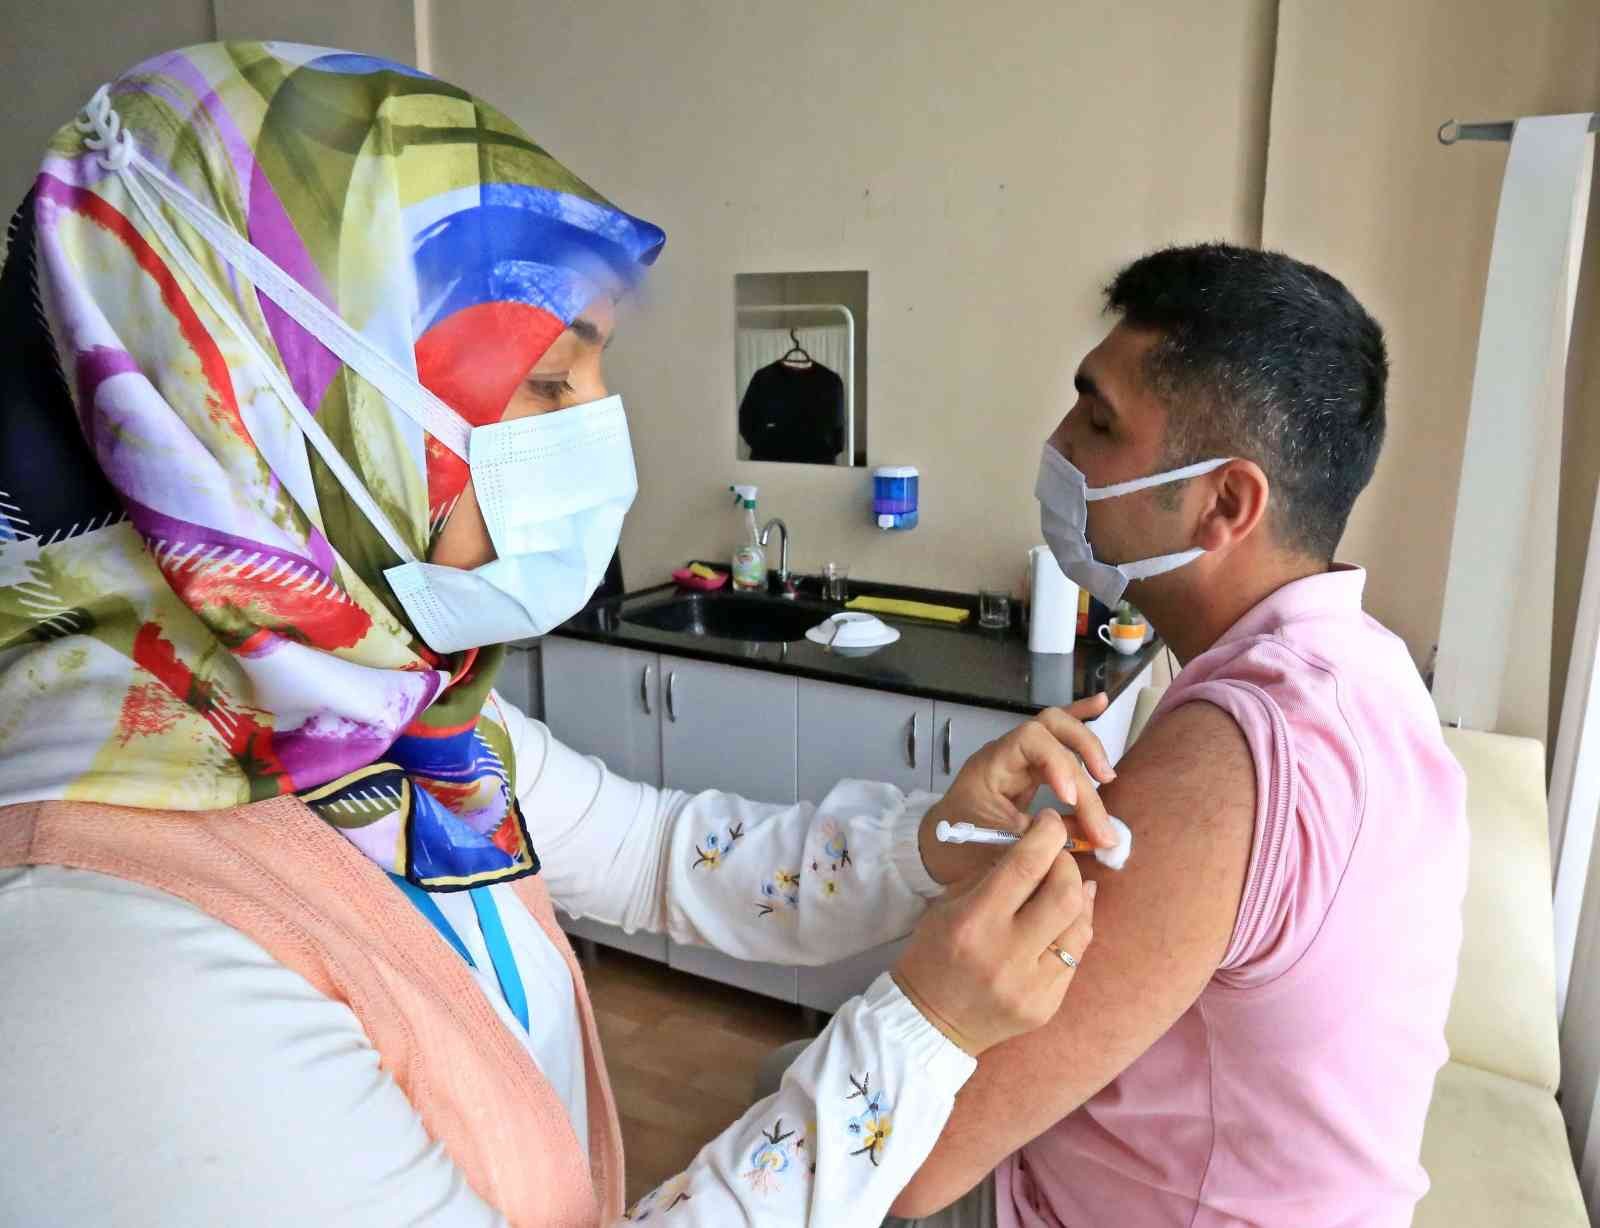 Aydın’da yerli aşı Turkovac uygulanmaya başlıyor #aydin